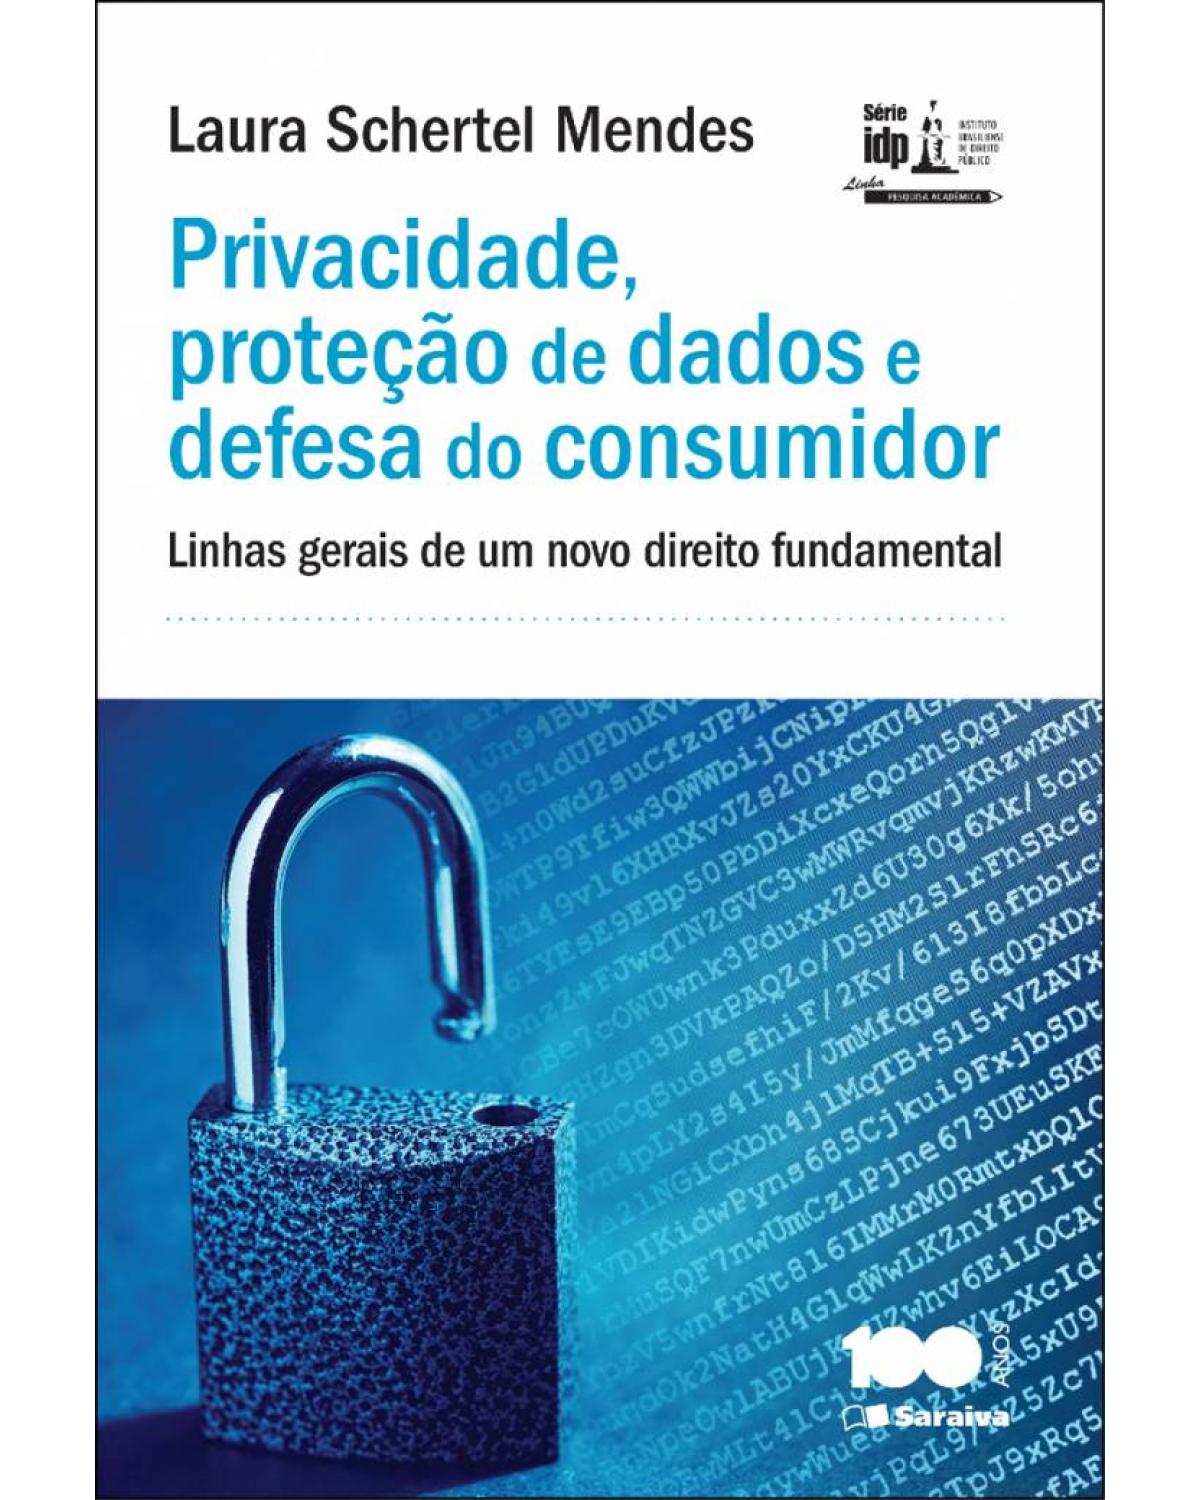 Privacidade, proteção de dados e defesa do consumidor - linhas gerais de um novo direito fundamental - 1ª Edição | 2014